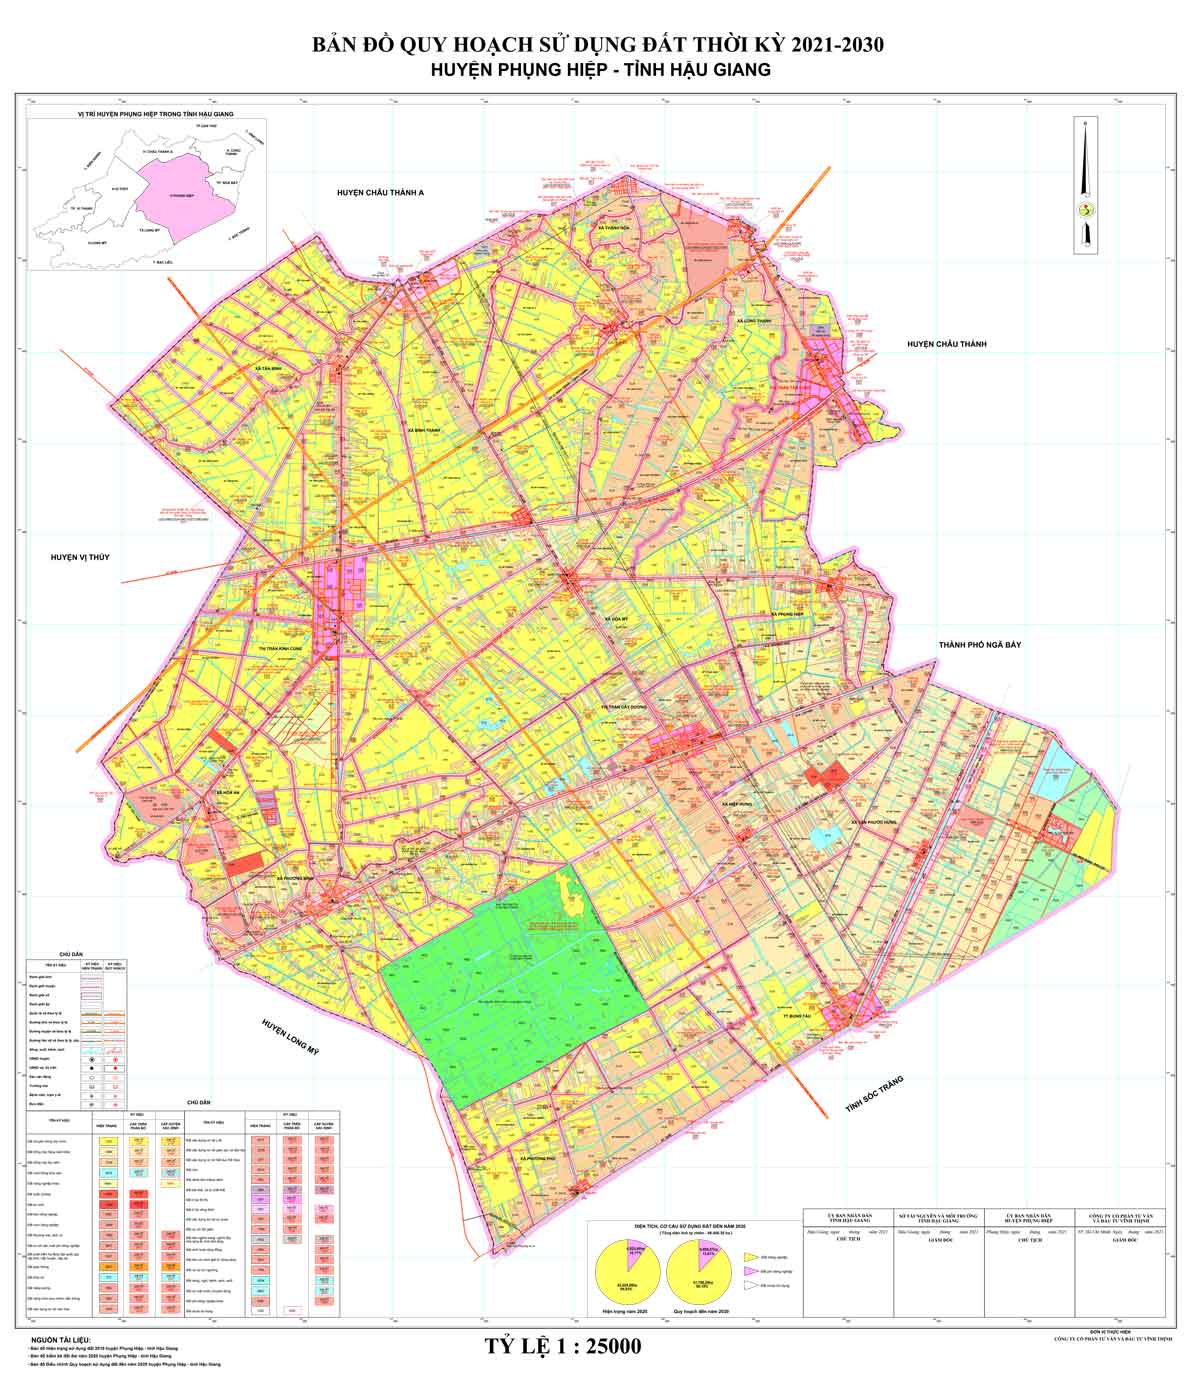 Bản đồ QHSDĐ huyện Phụng Hiệp đến năm 2030